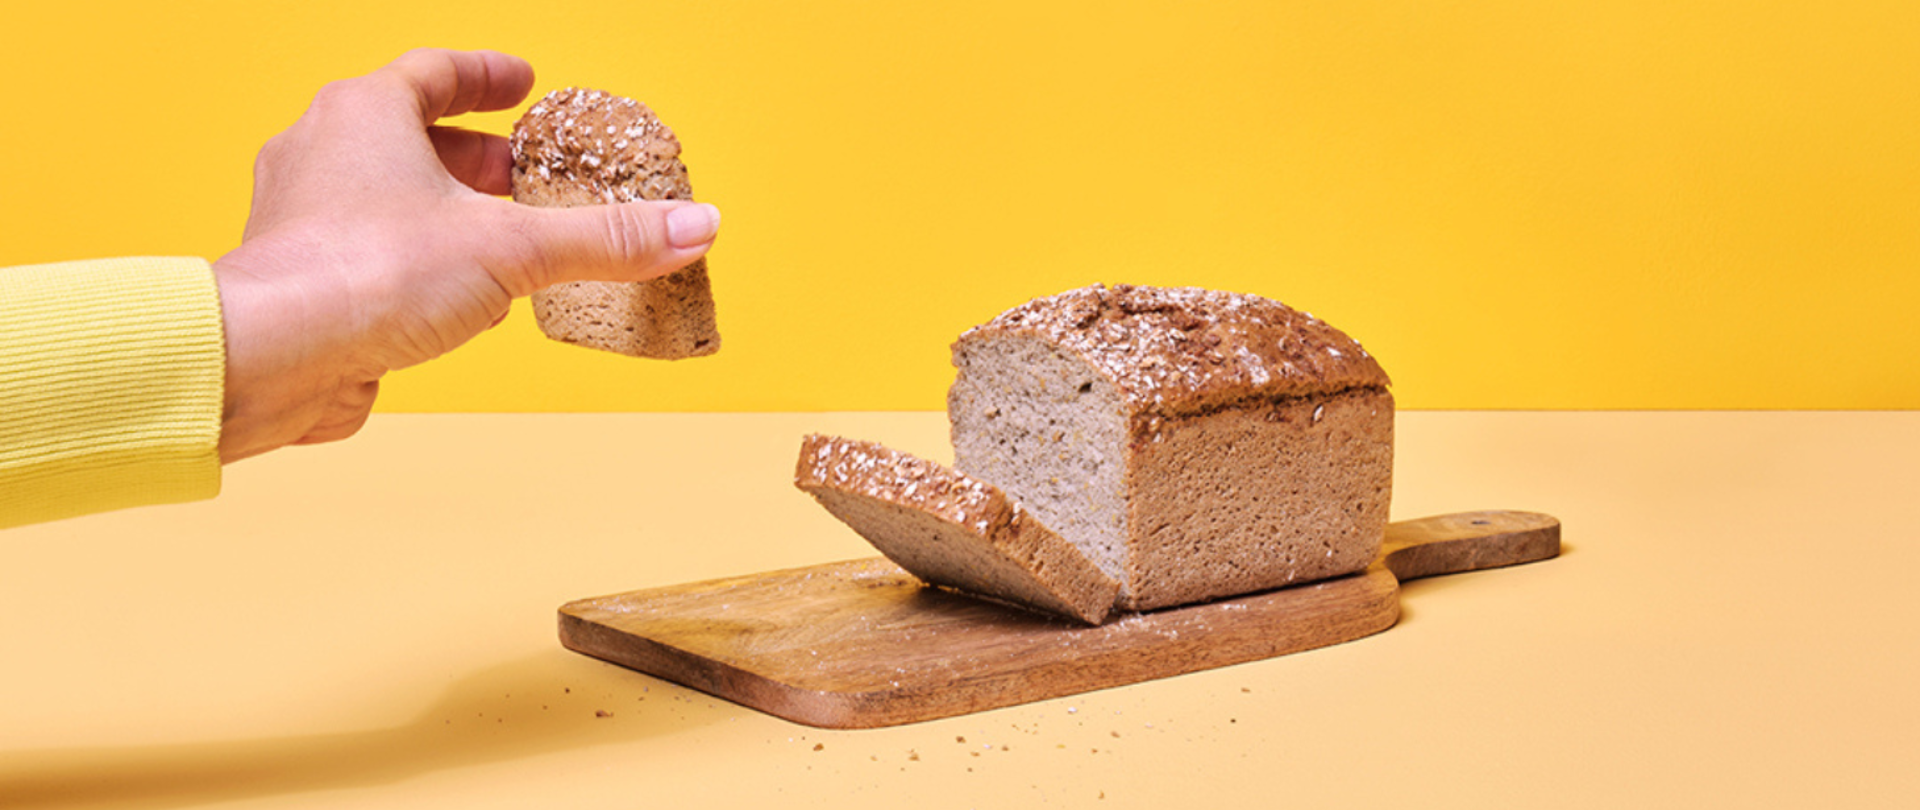 zdjęcie przedstawia pokrojony chleb